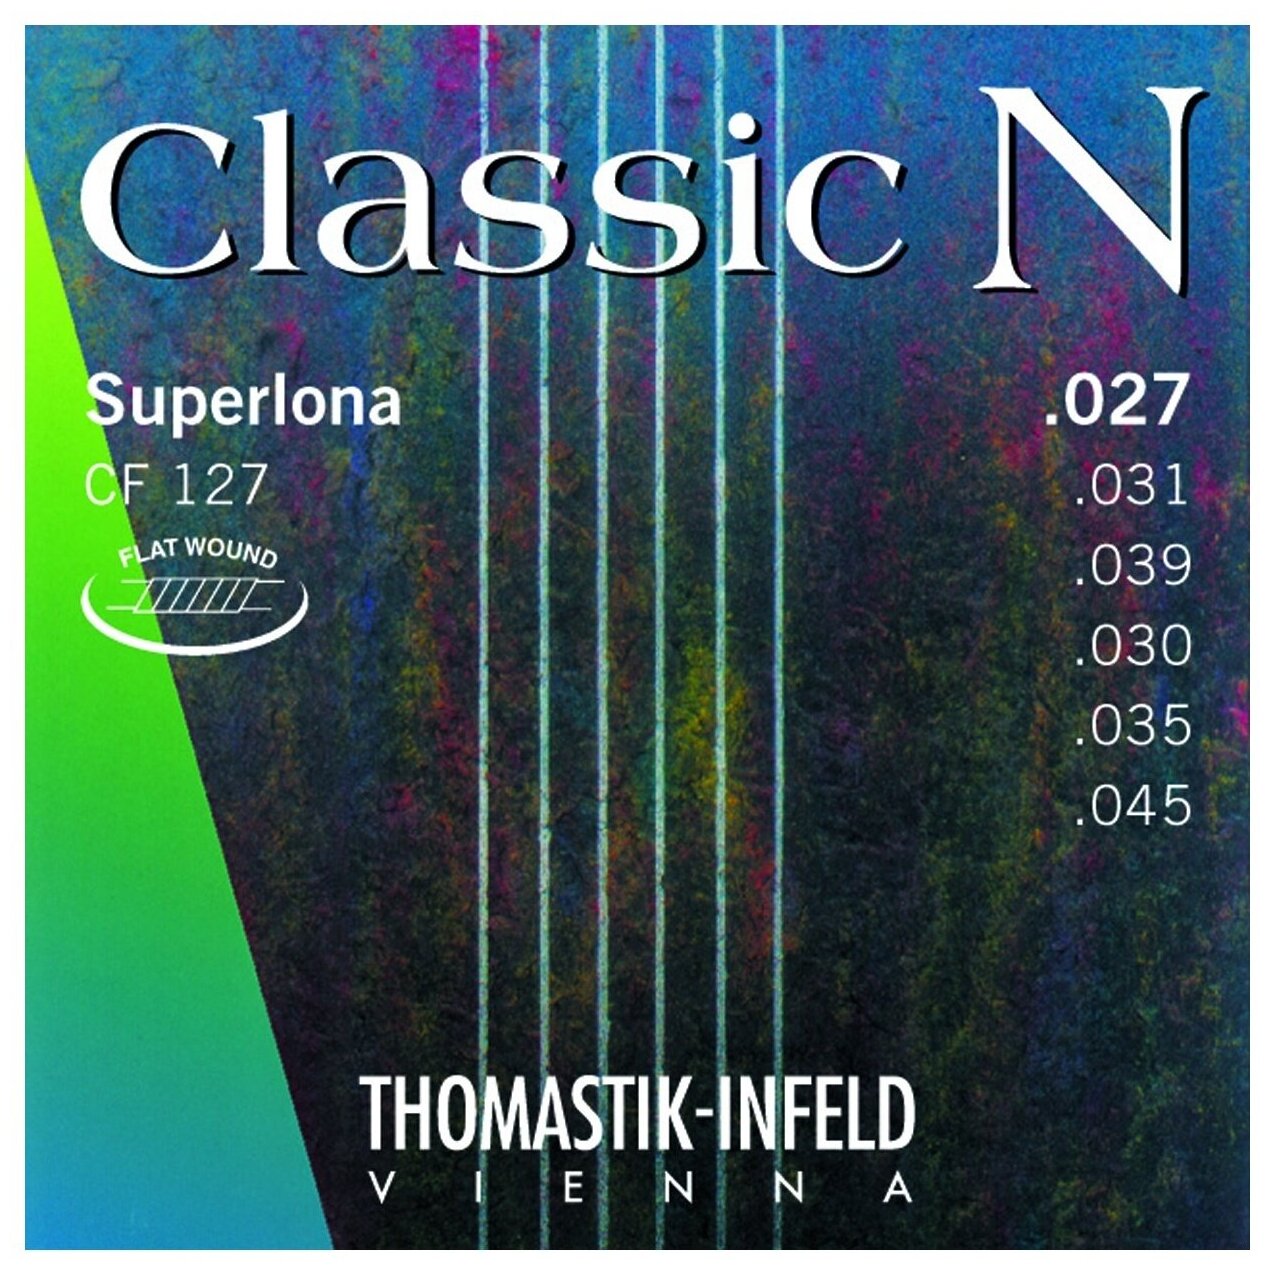 THOMASTIK CF127 Струны для классической гитары